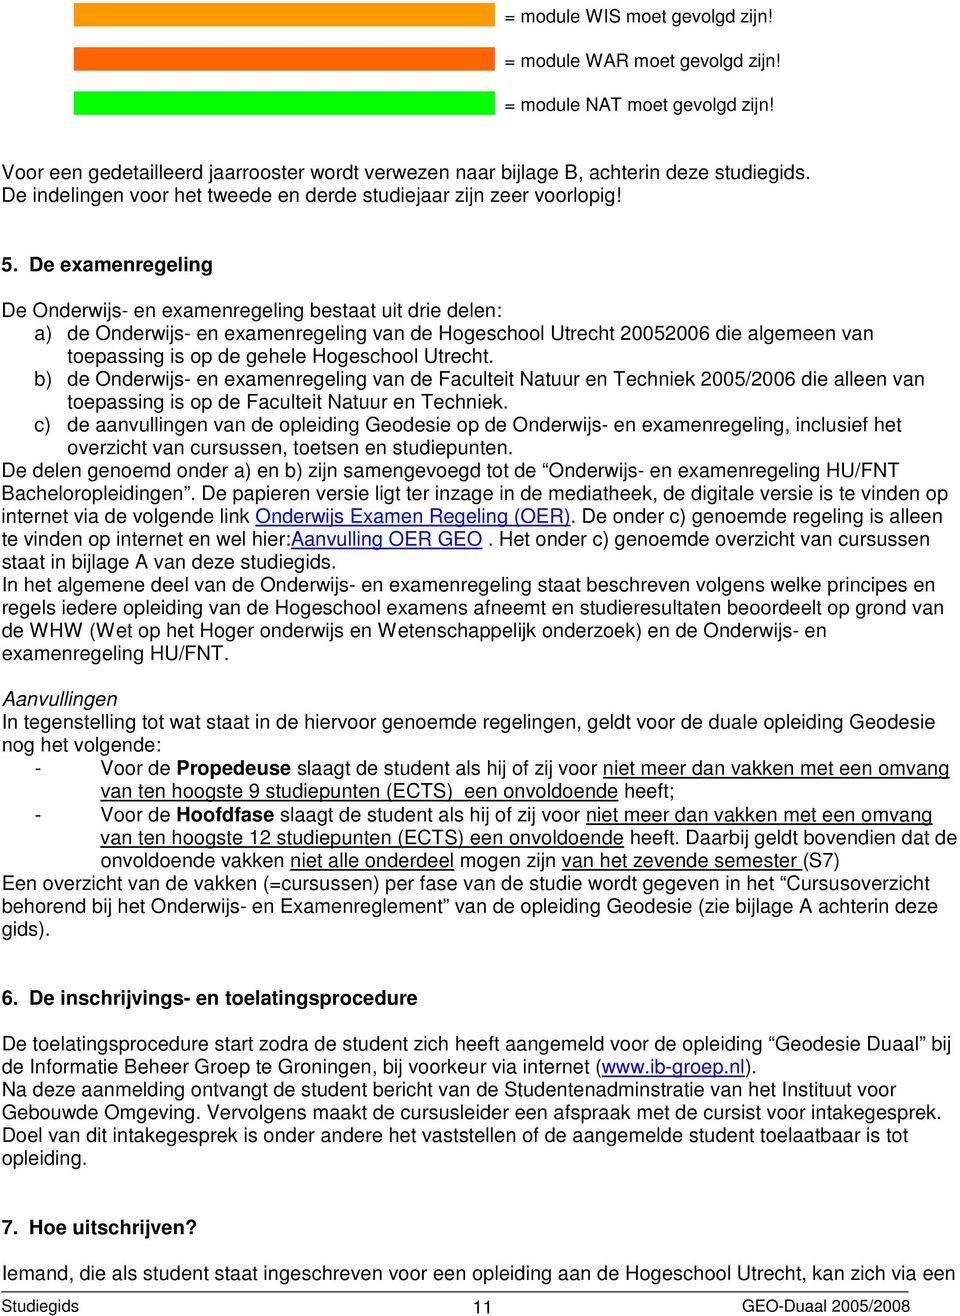 De examenregeling De Onderwijs- en examenregeling bestaat uit drie delen: a) de Onderwijs- en examenregeling van de Hogeschool Utrecht 20052006 die algemeen van toepassing is op de gehele Hogeschool